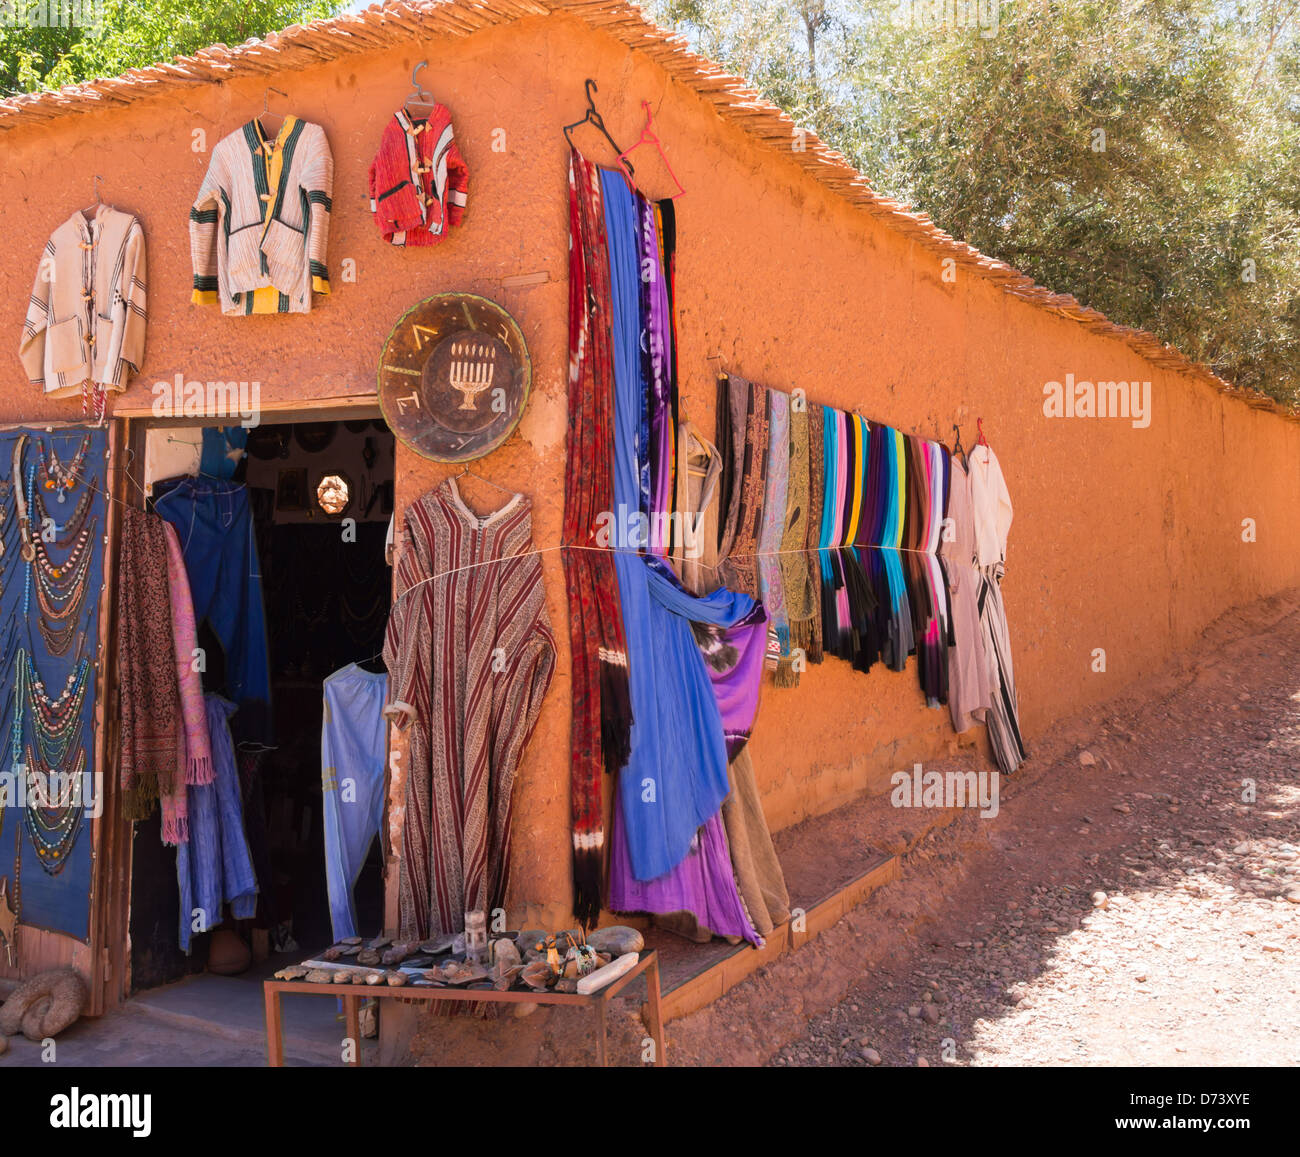 Ait Ben Haddou, vicino a Ouarzazate, Marocco - villaggio storico, fort, casbah e set cinematografico. Unesco patrimonio dell'umanità. Trading colorati. Foto Stock